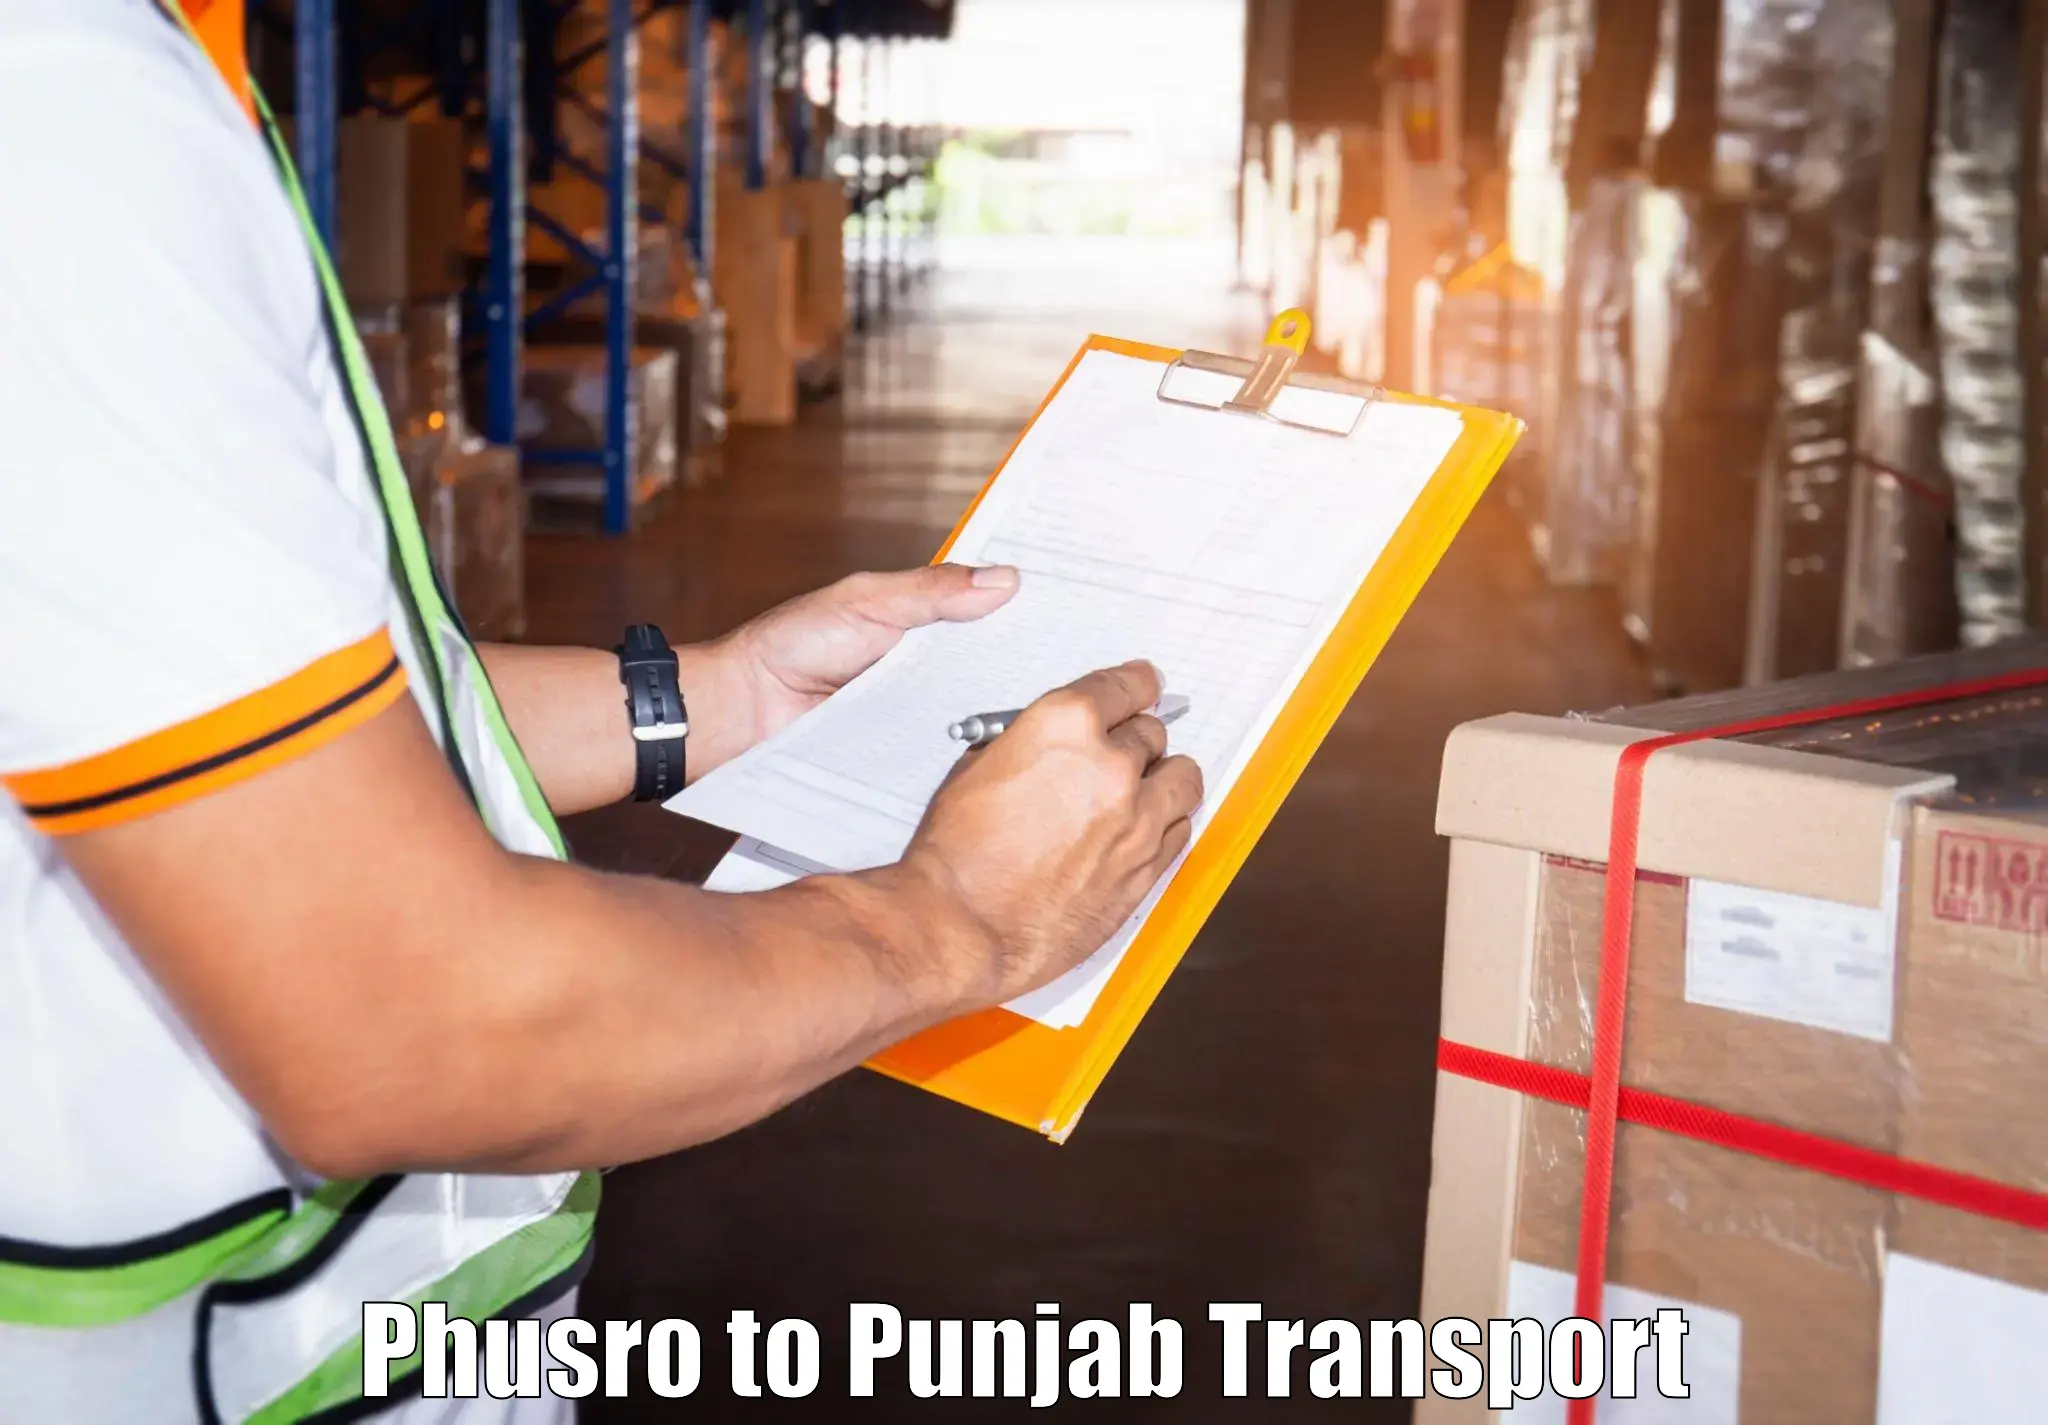 Transport services Phusro to Punjab